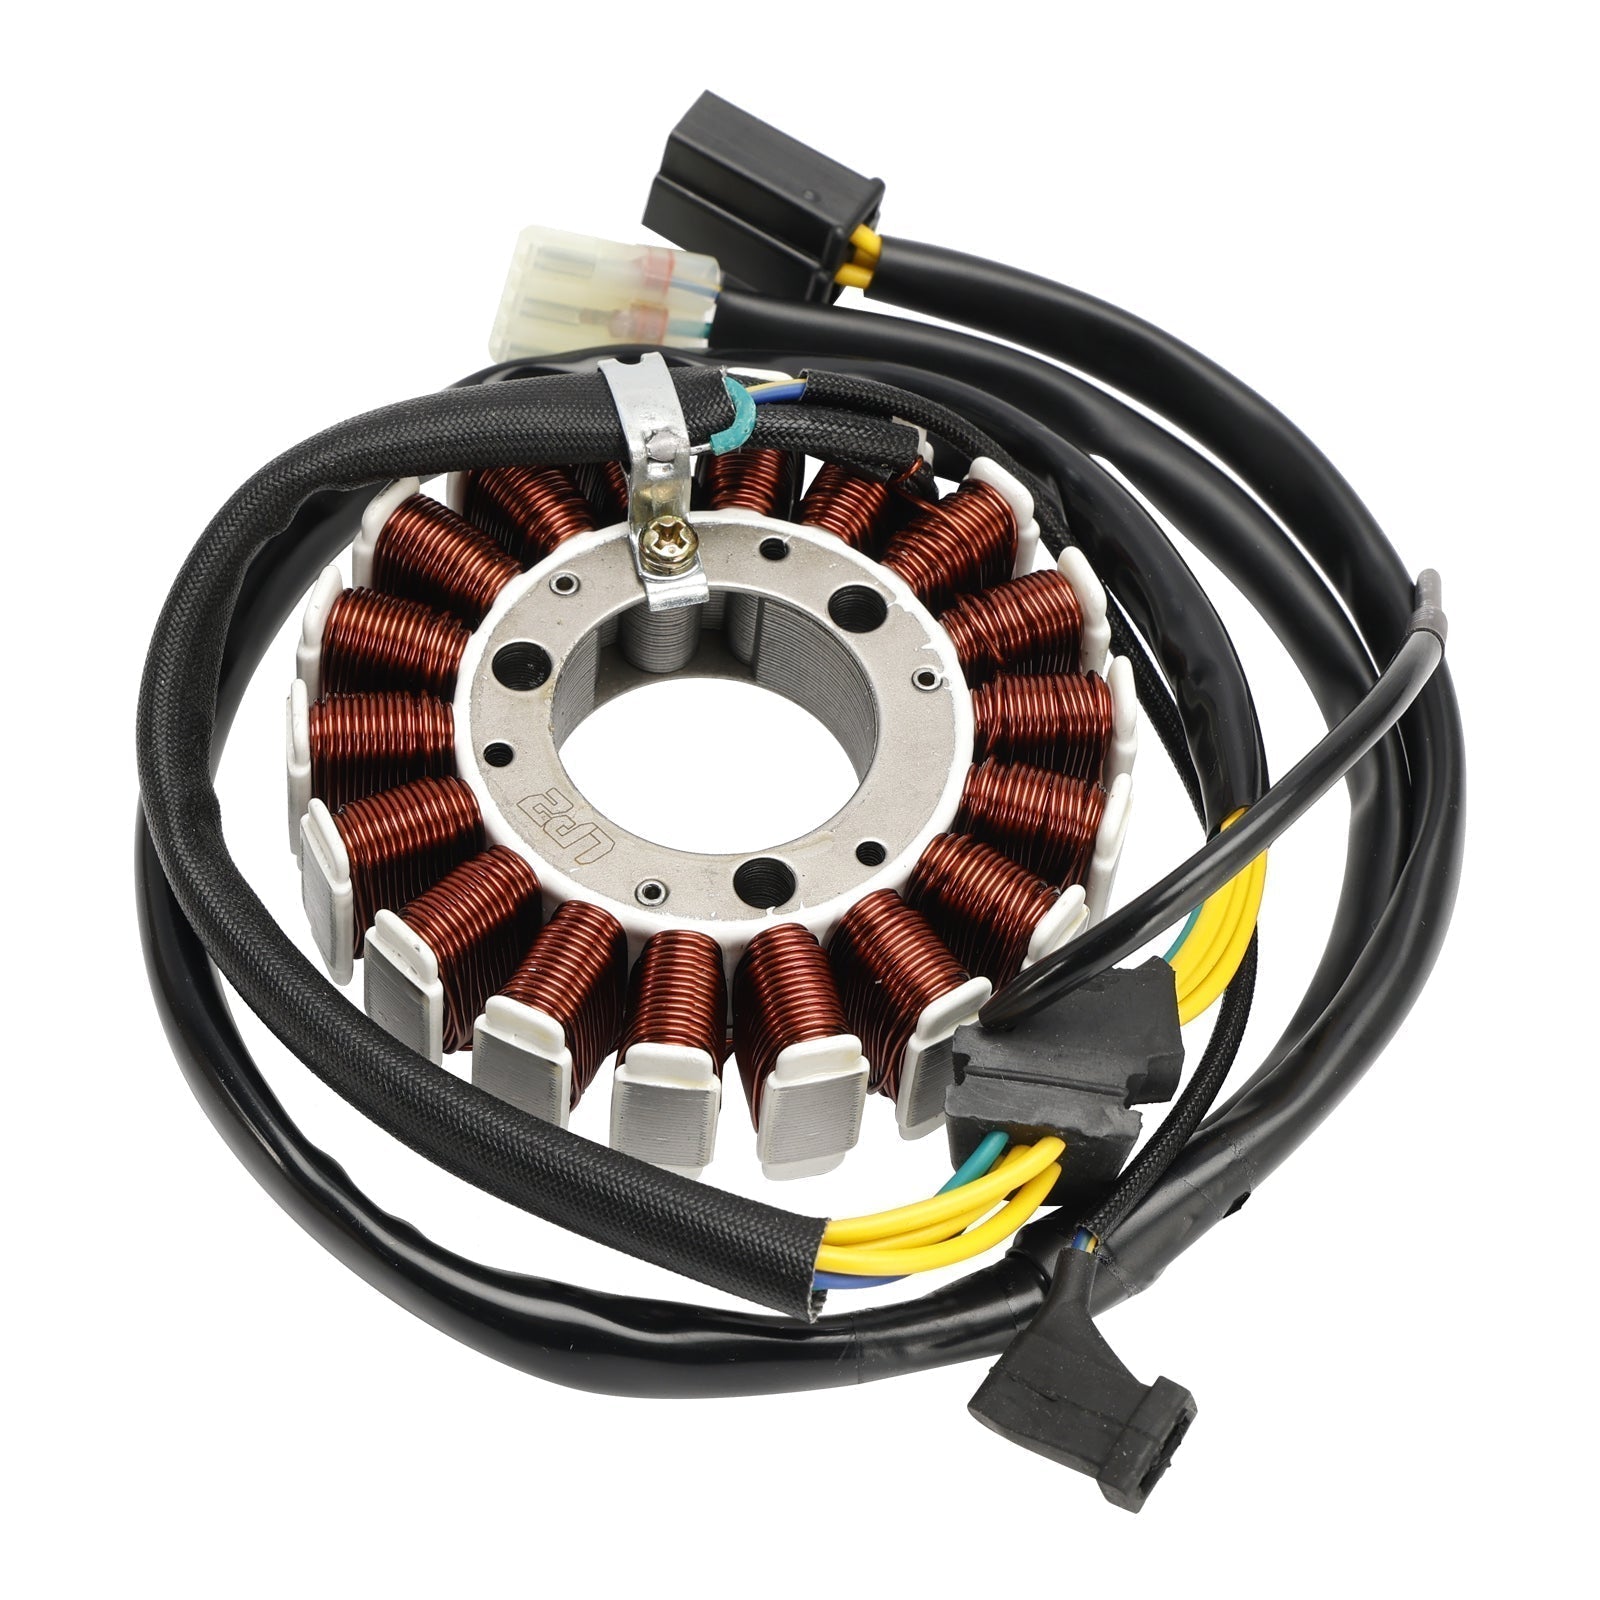 Stator de bobine magnétique Honda CRF230M 2009 + régulateur de tension + joint Assy 31120-KFB-841